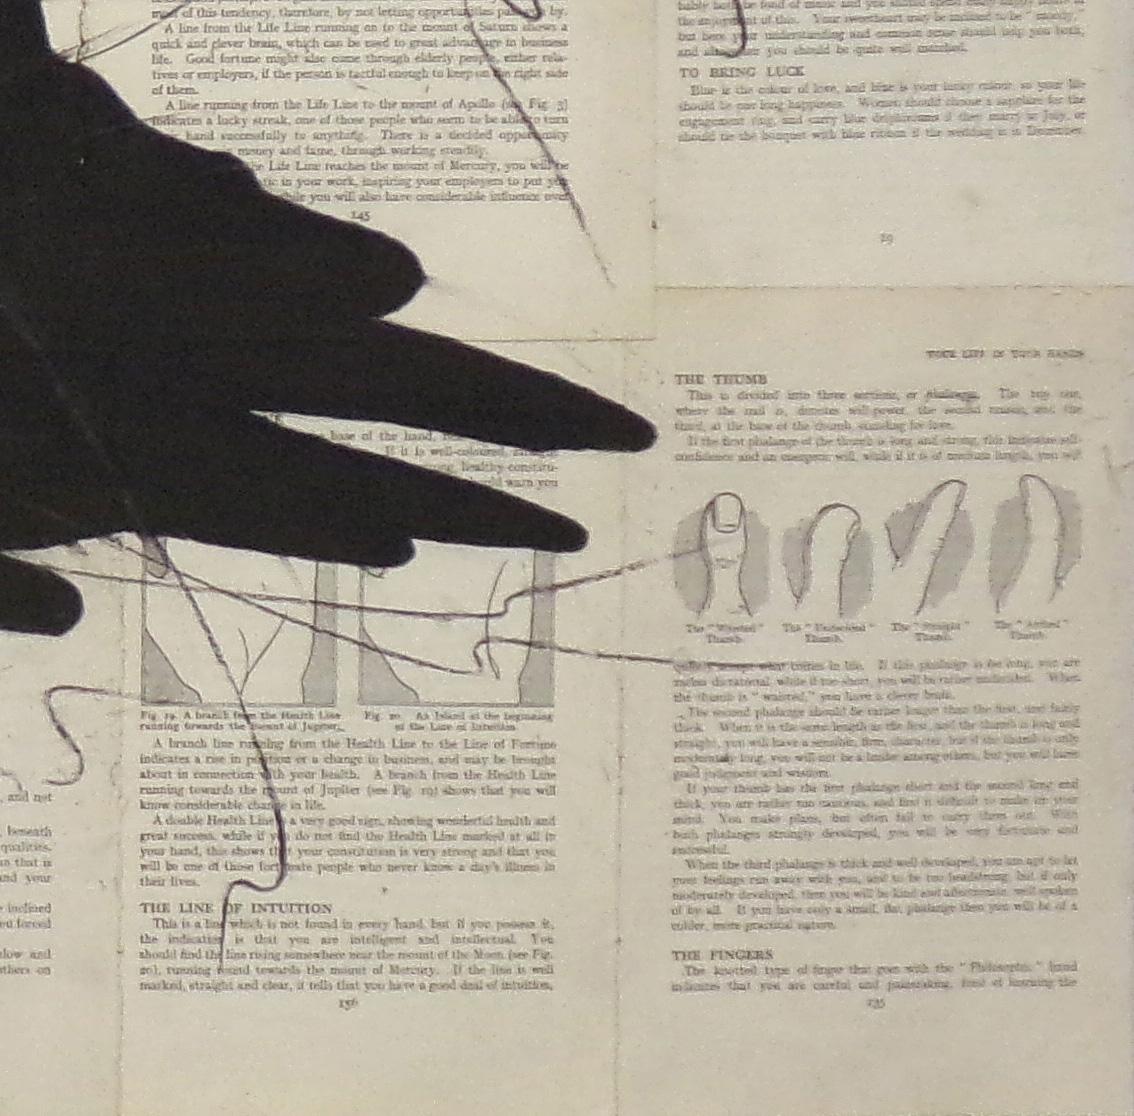 Raven Reads the Lines (Kreidezeichnung eines schwarzen Vogels auf alten Buchseiten) von Louise Laplante
kreide auf alten collagierten Buchseiten.
Kunstwerk misst 25 x 37 Zoll ungerahmt

Diese zeitgenössische, grafische Kreidezeichnung auf